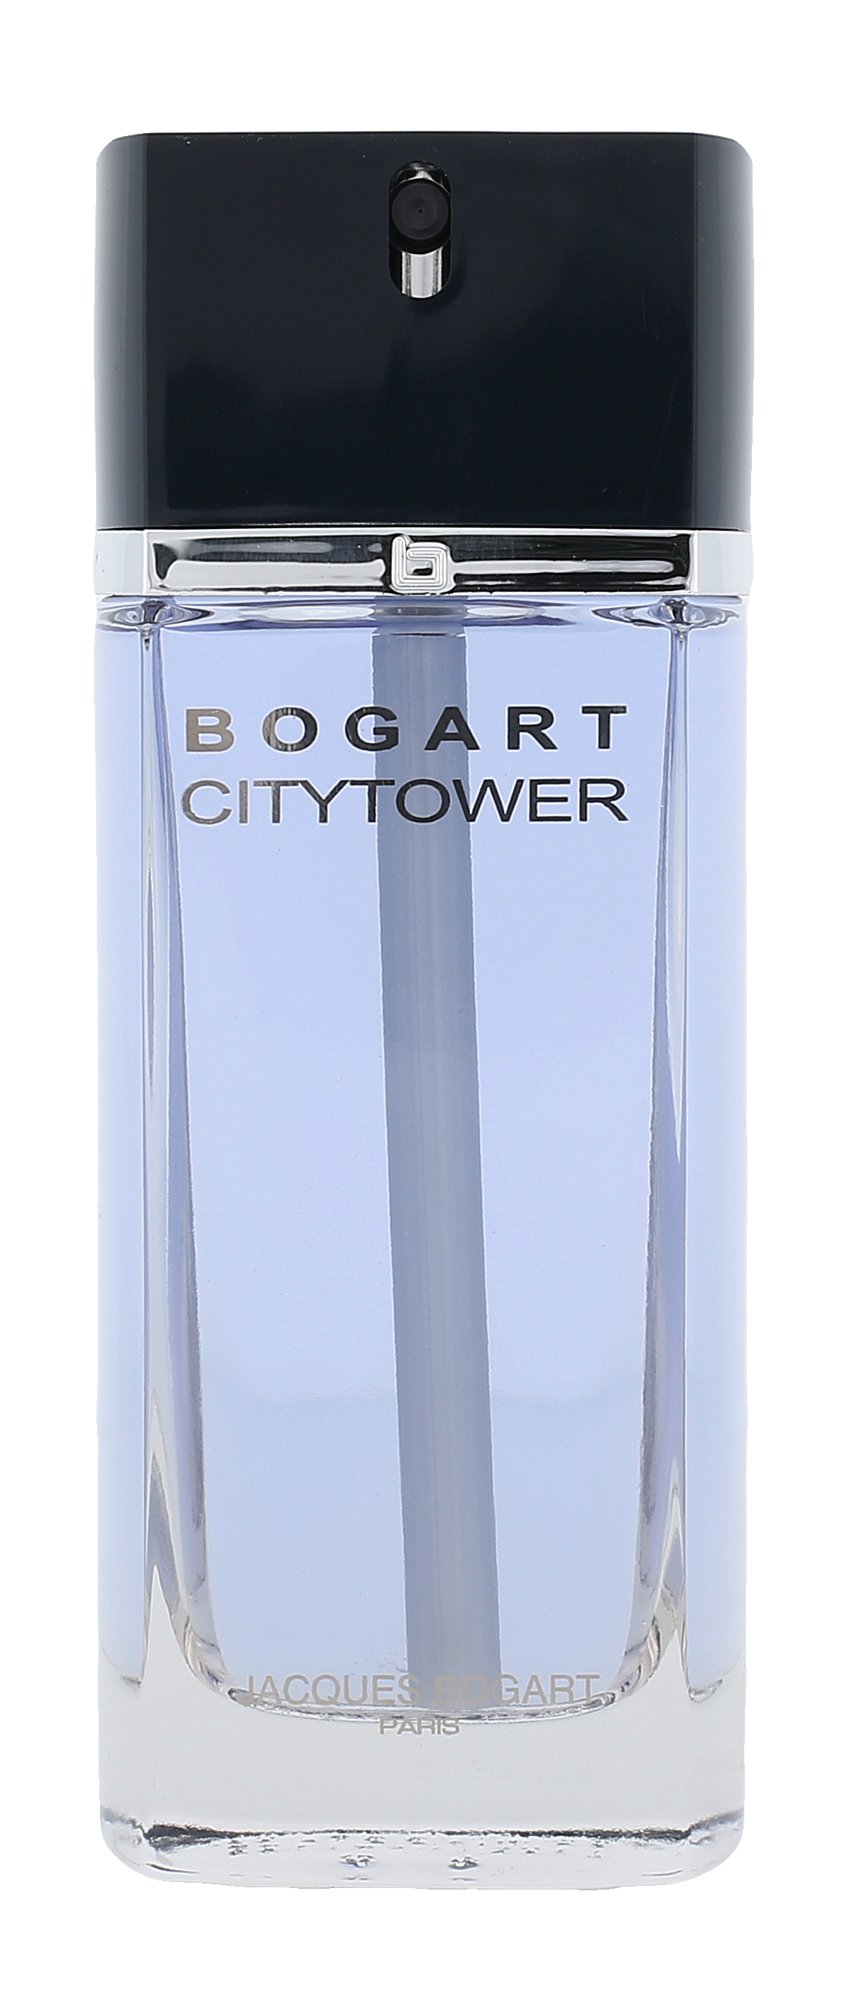 Jacques Bogart Bogart CityTower, edt 100ml - Teszter